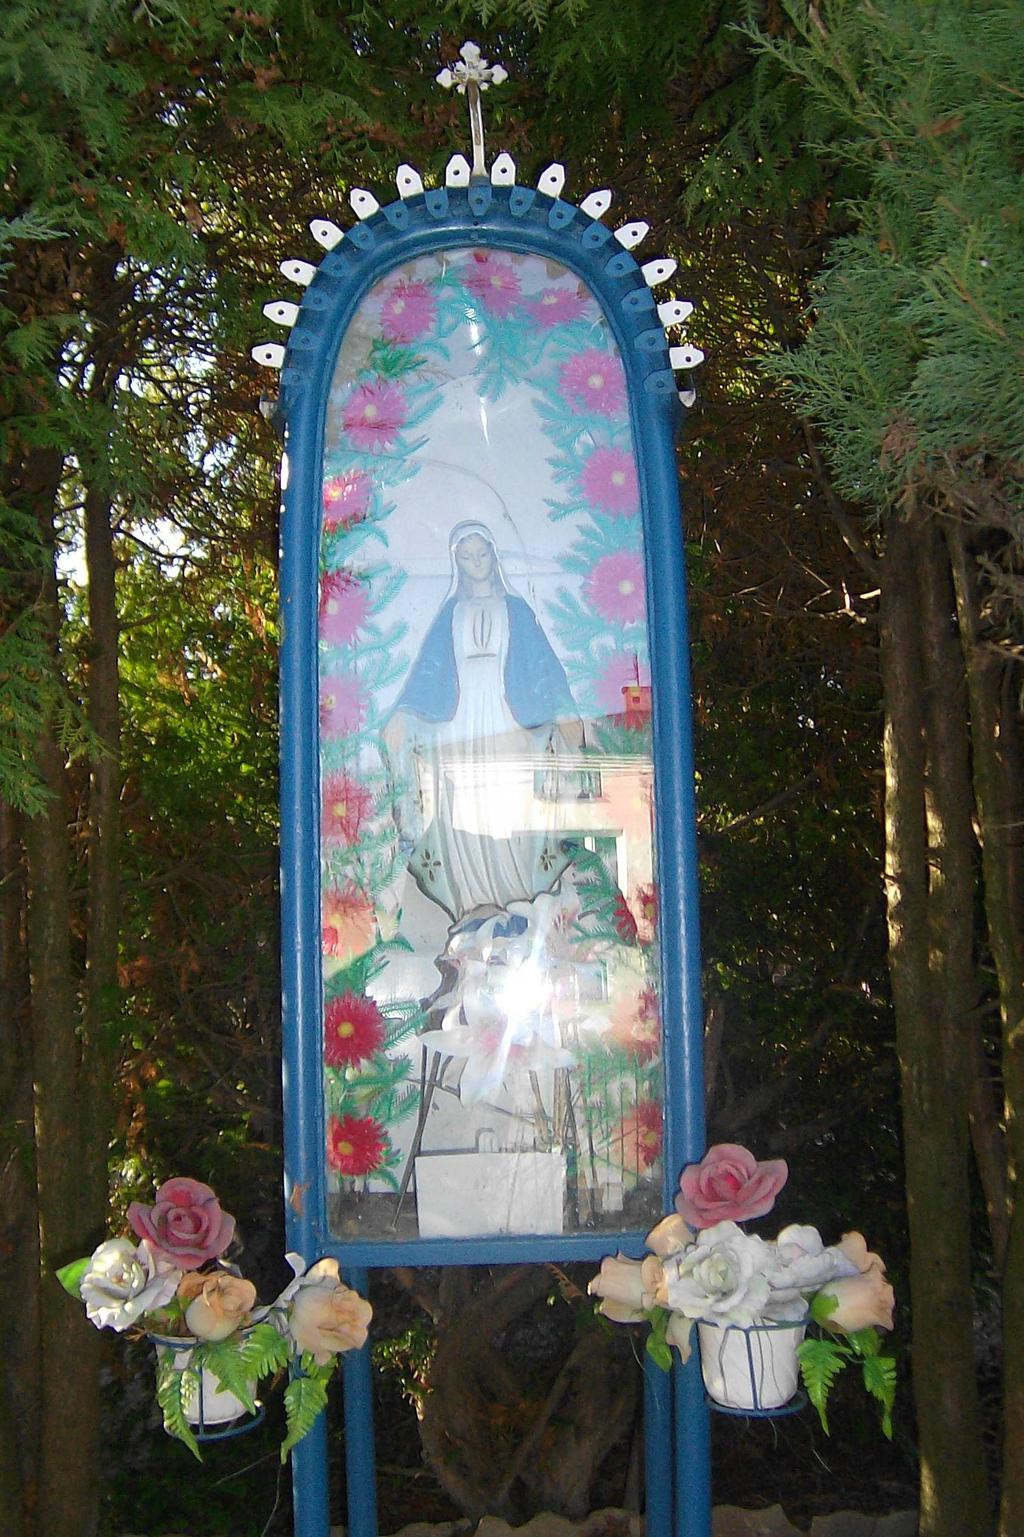 W kapliczce znajduje się figurka Matki Boskiej, która ma otwarte dłonie i szeroko